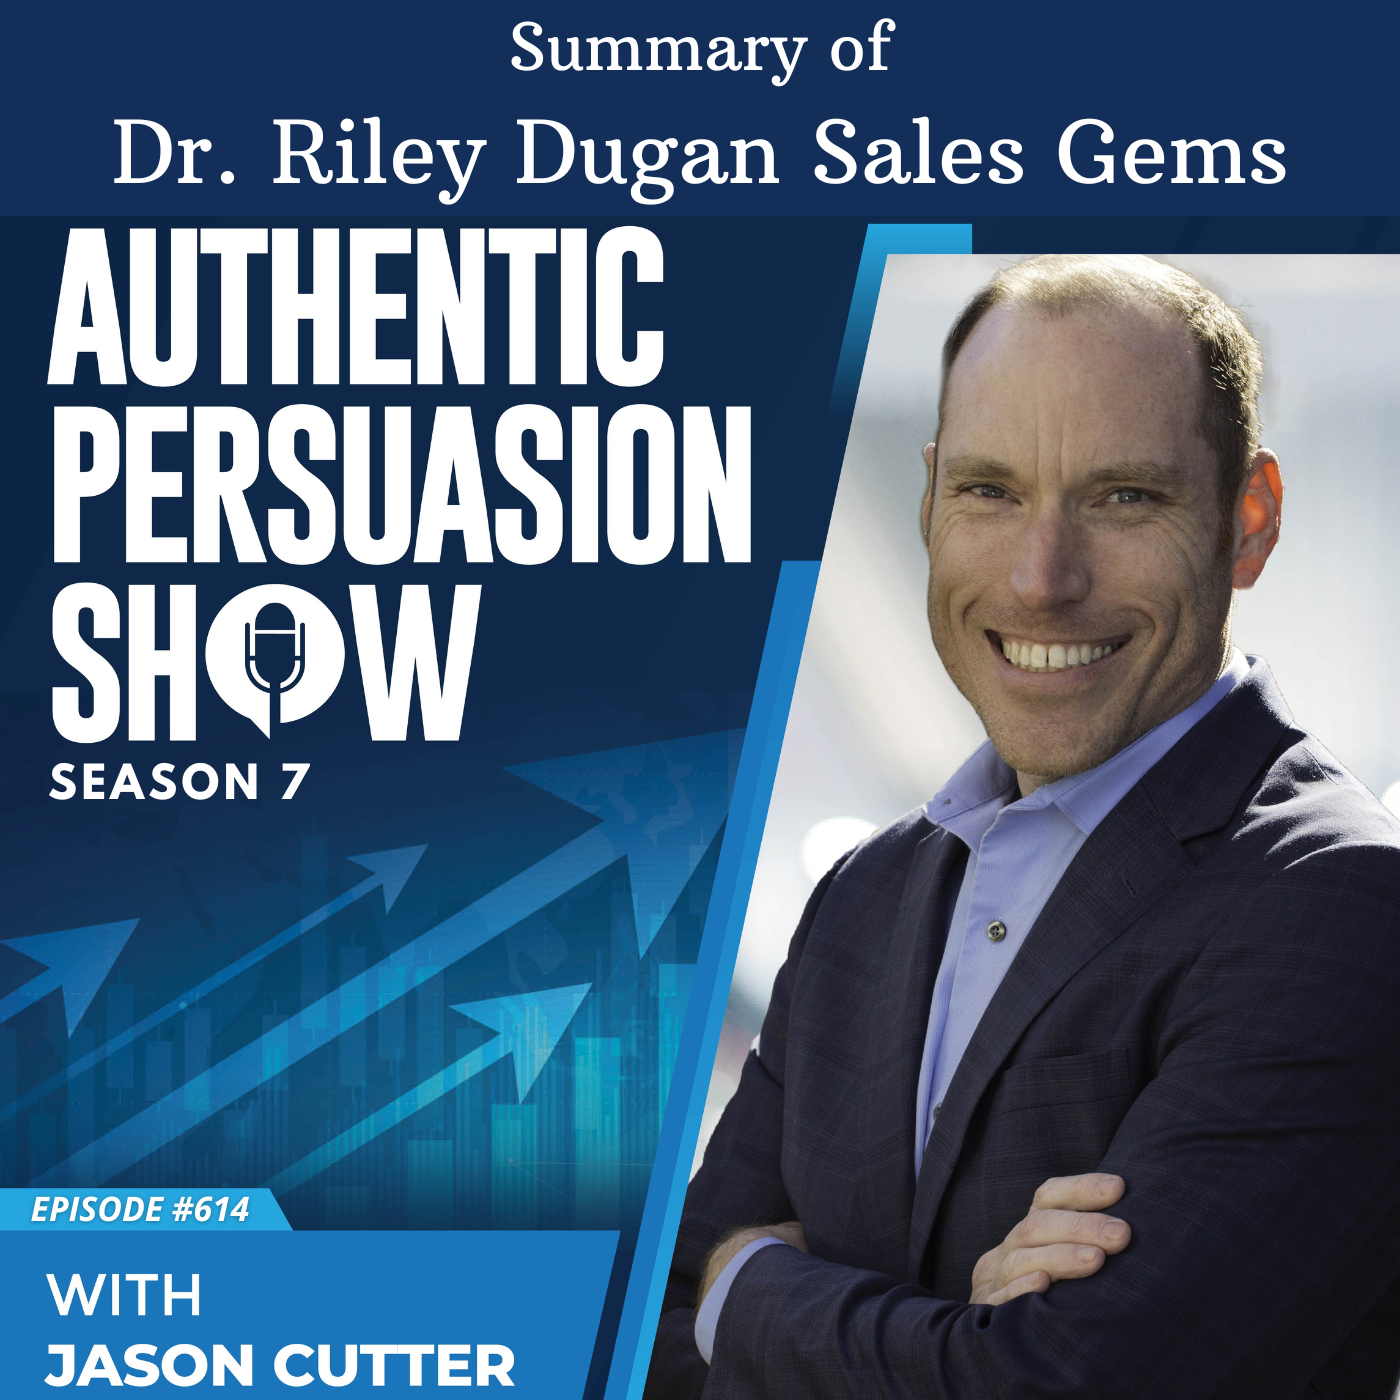 [614] Summary of Dr. Riley Dugan Sales Gems